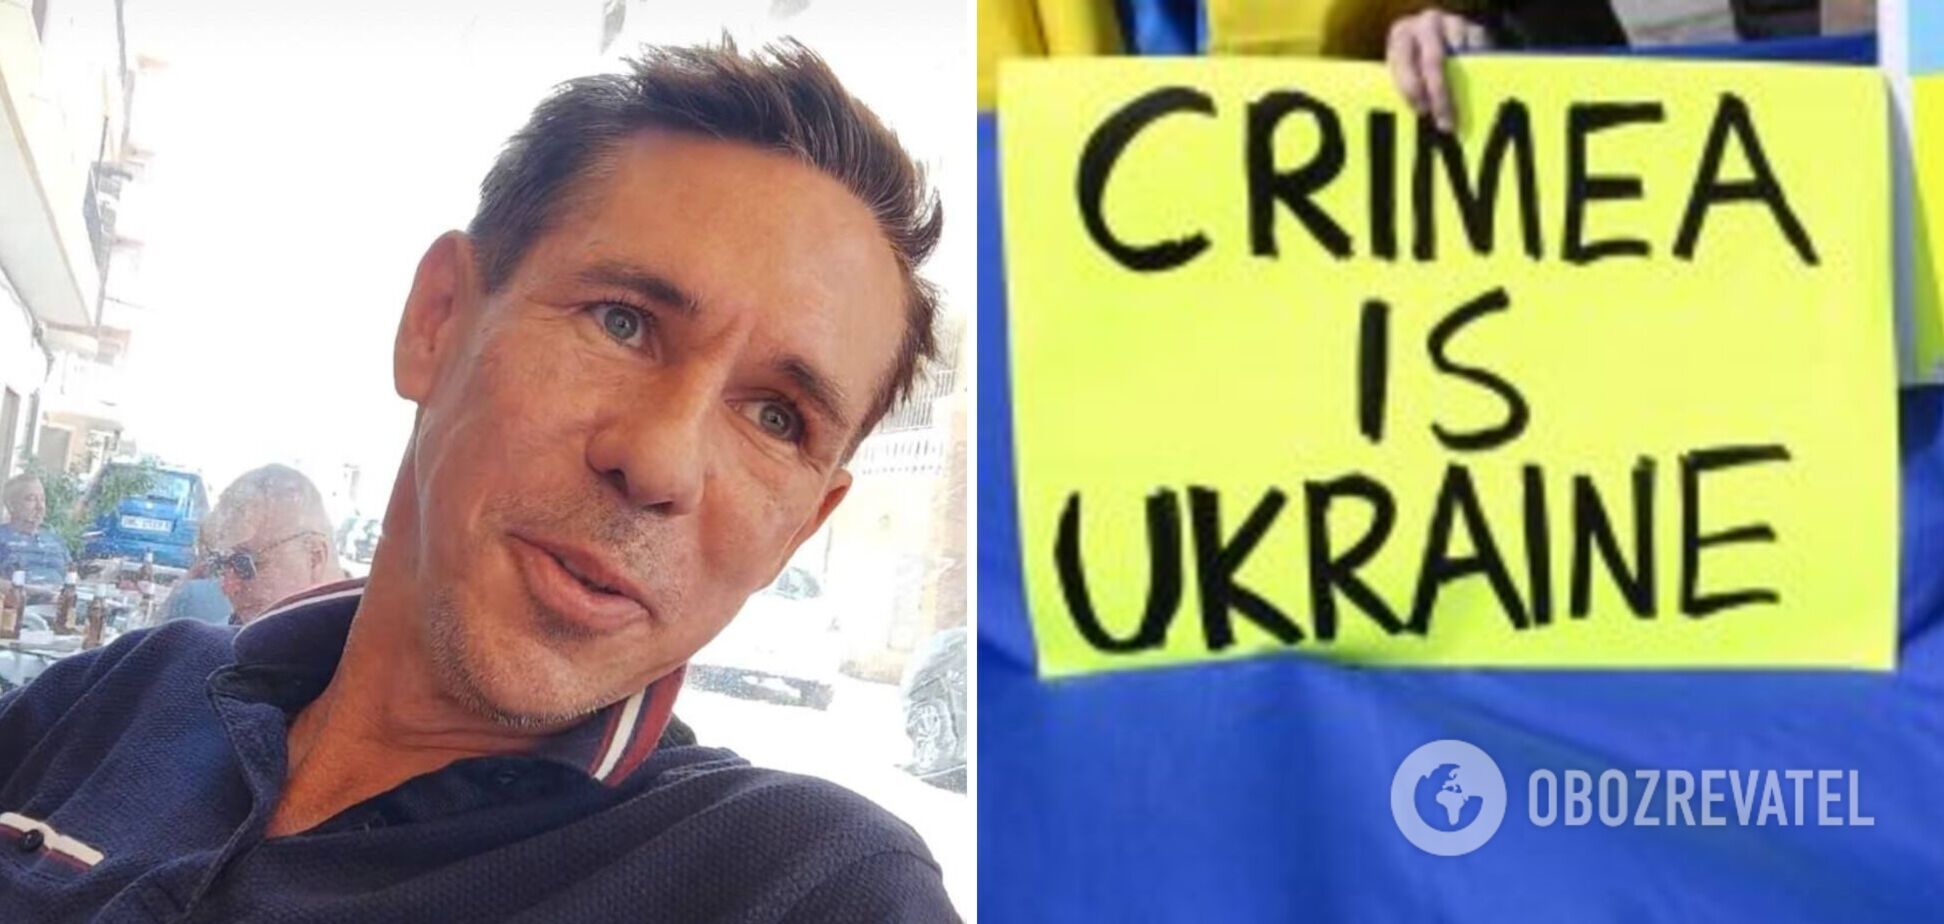 'Звернувся б до Зеленського': Панін висловив бажання приїхати в Україну, щоб дати пояснення у суді щодо фрази 'Крим – наш'